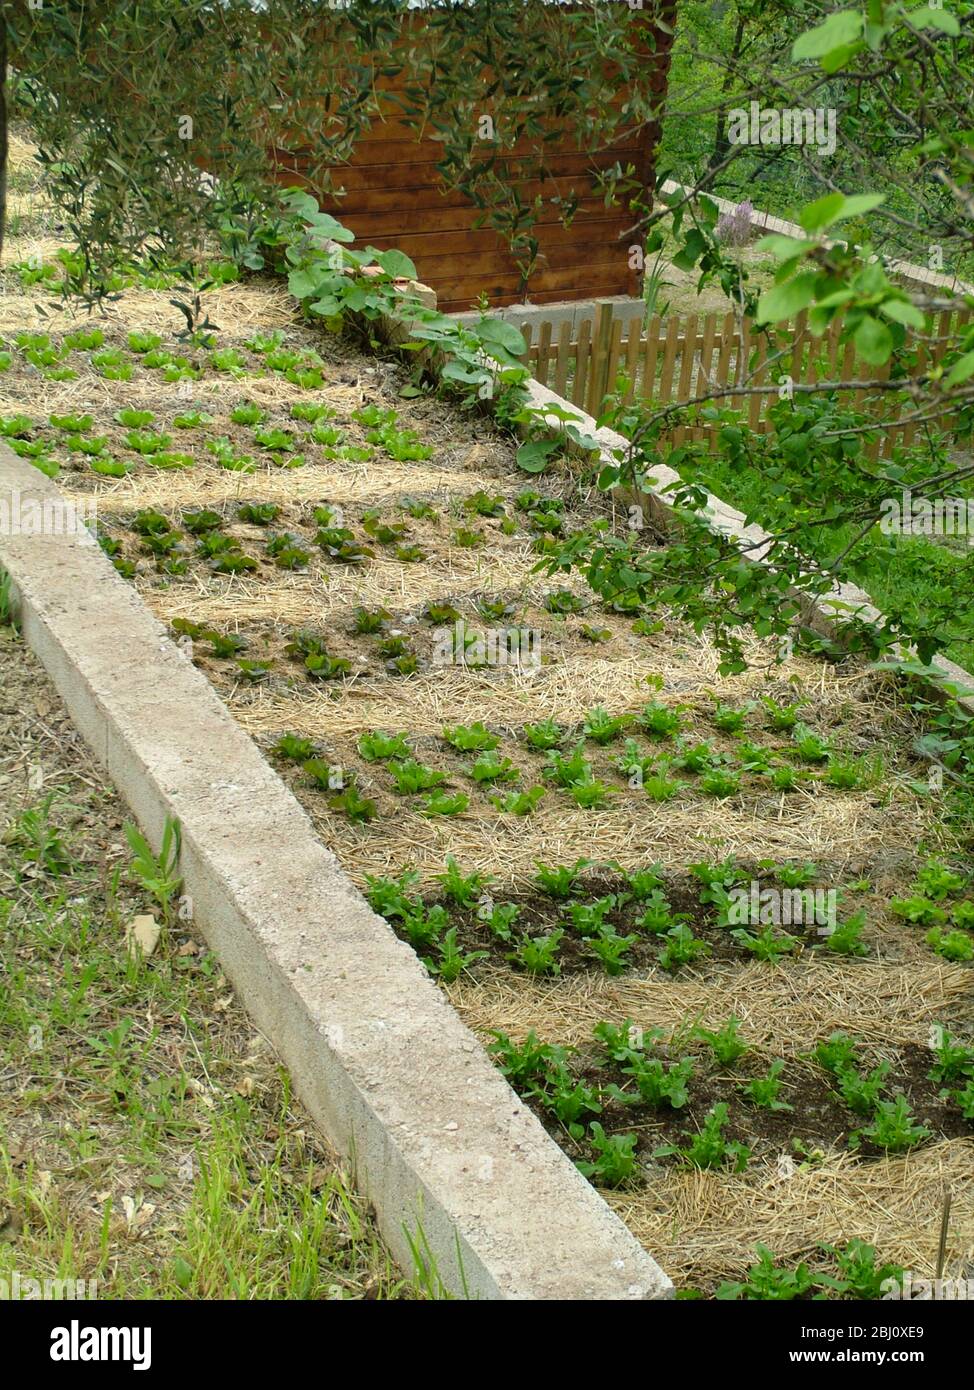 Schön angelegt Salat und Salatpflanzen auf schmalem Streifen neben der Straße im französischen Dorf - Stockfoto